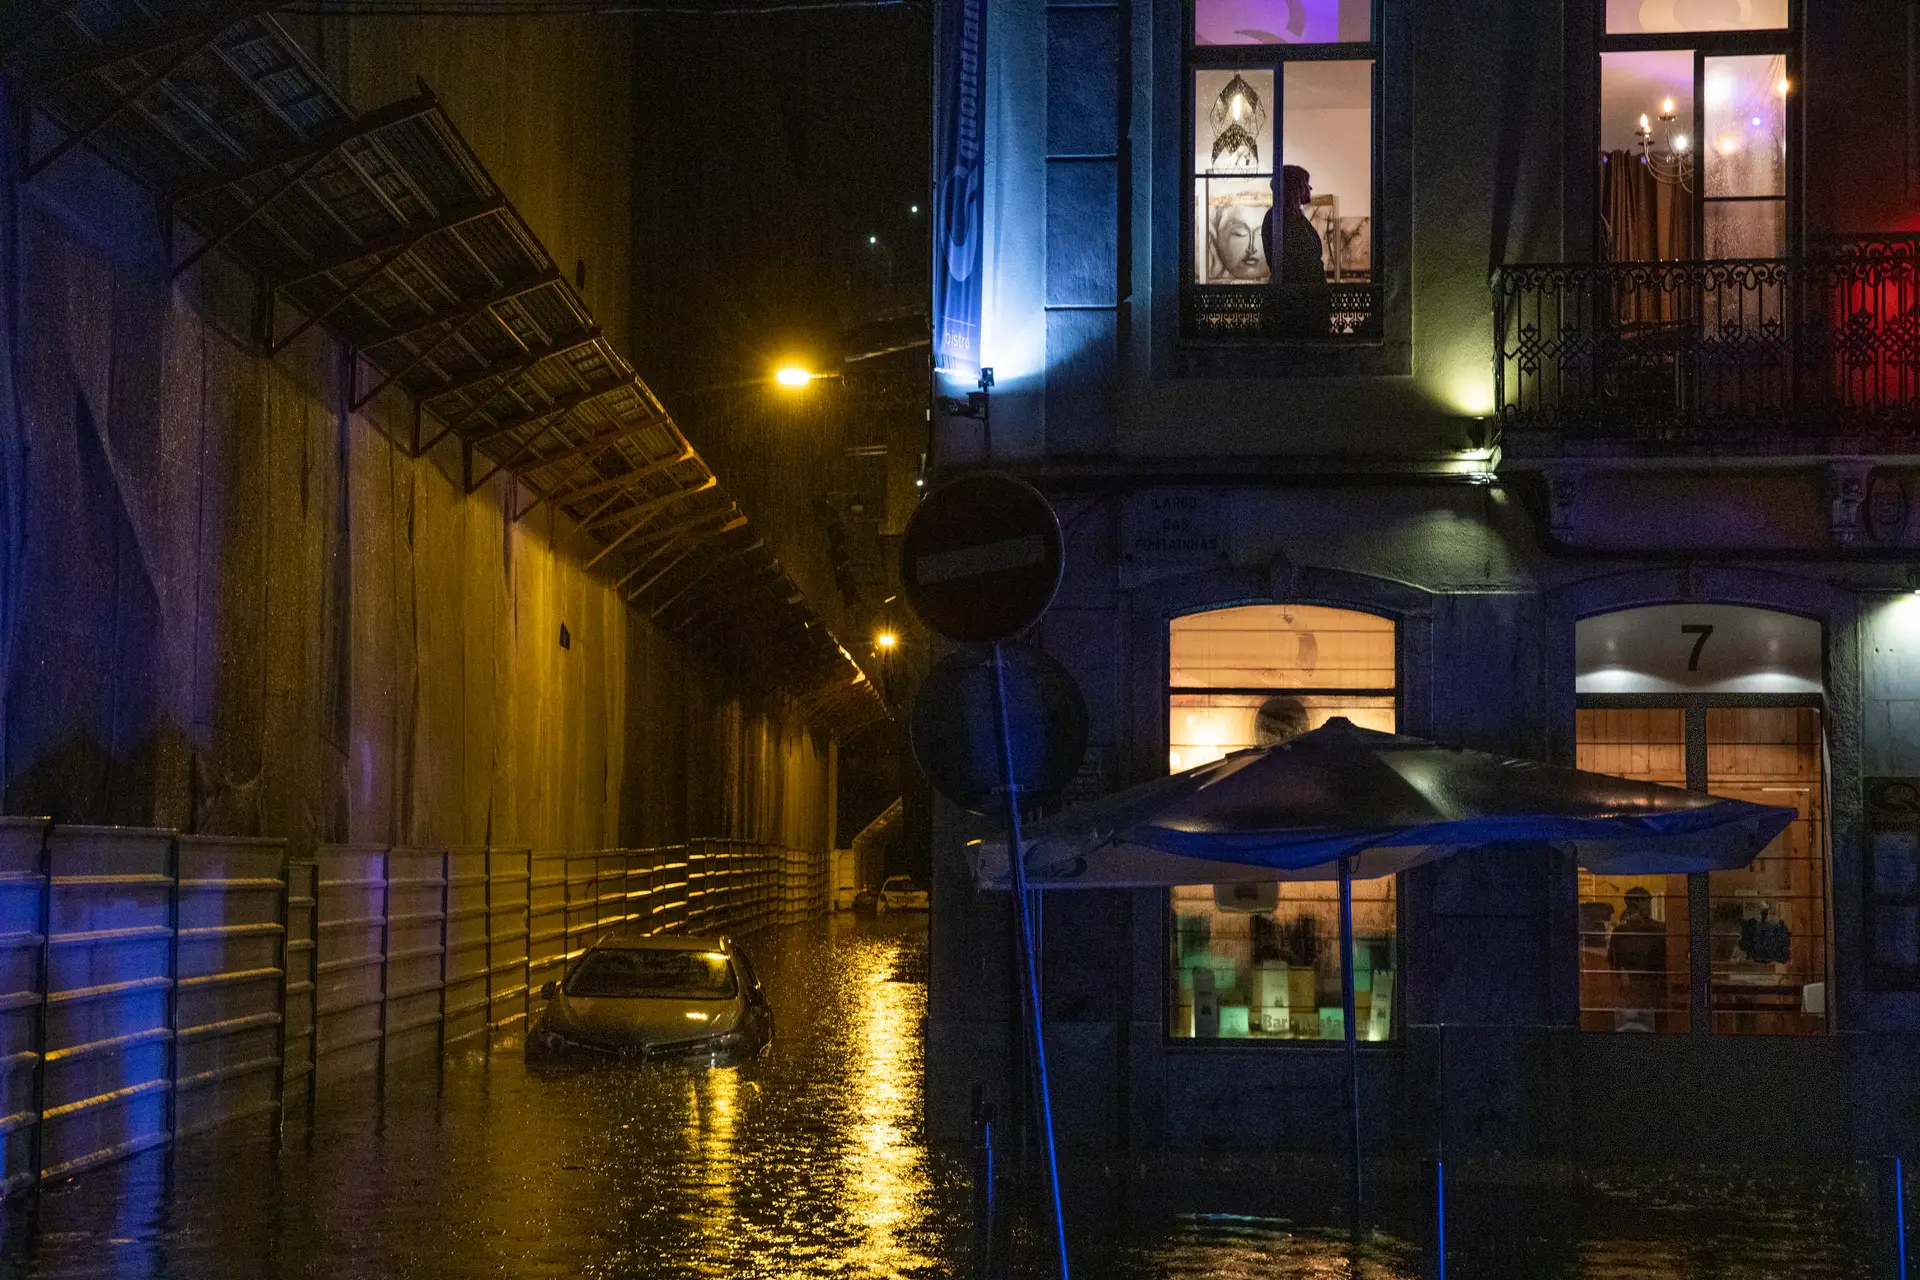 O que choveu em três horas em Lisboa foi “uma brutalidade”. Eventos assim são “difíceis de prever” com antecedência e precisão